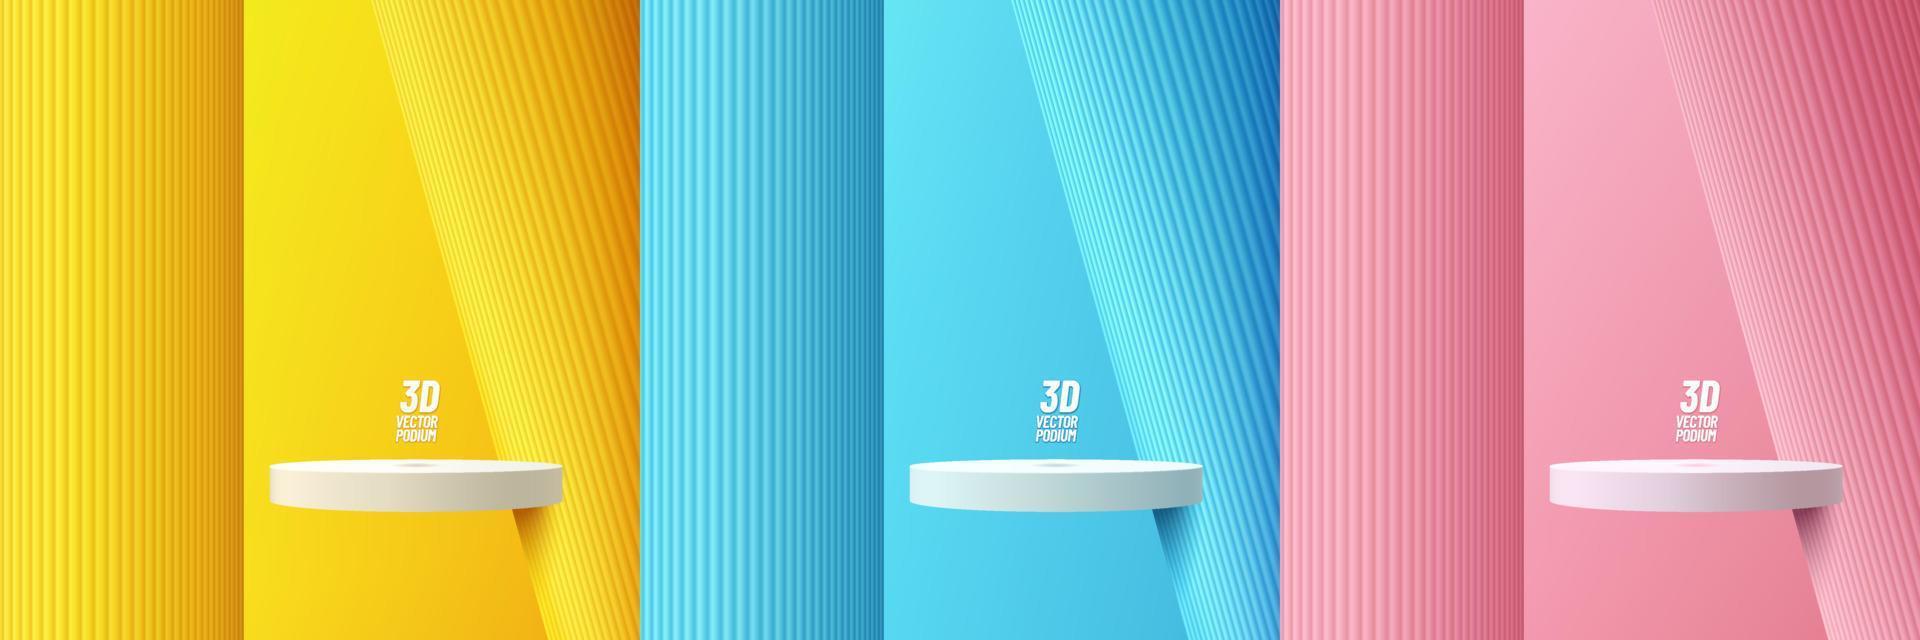 uppsättning av realistisk 3d flytande vit cylinderpodium i gula, blå, rosa rum med vertikal pelare bakgrund. abstrakt vektor rendering geometriska former. mockup produktdisplay. minimal väggscen.